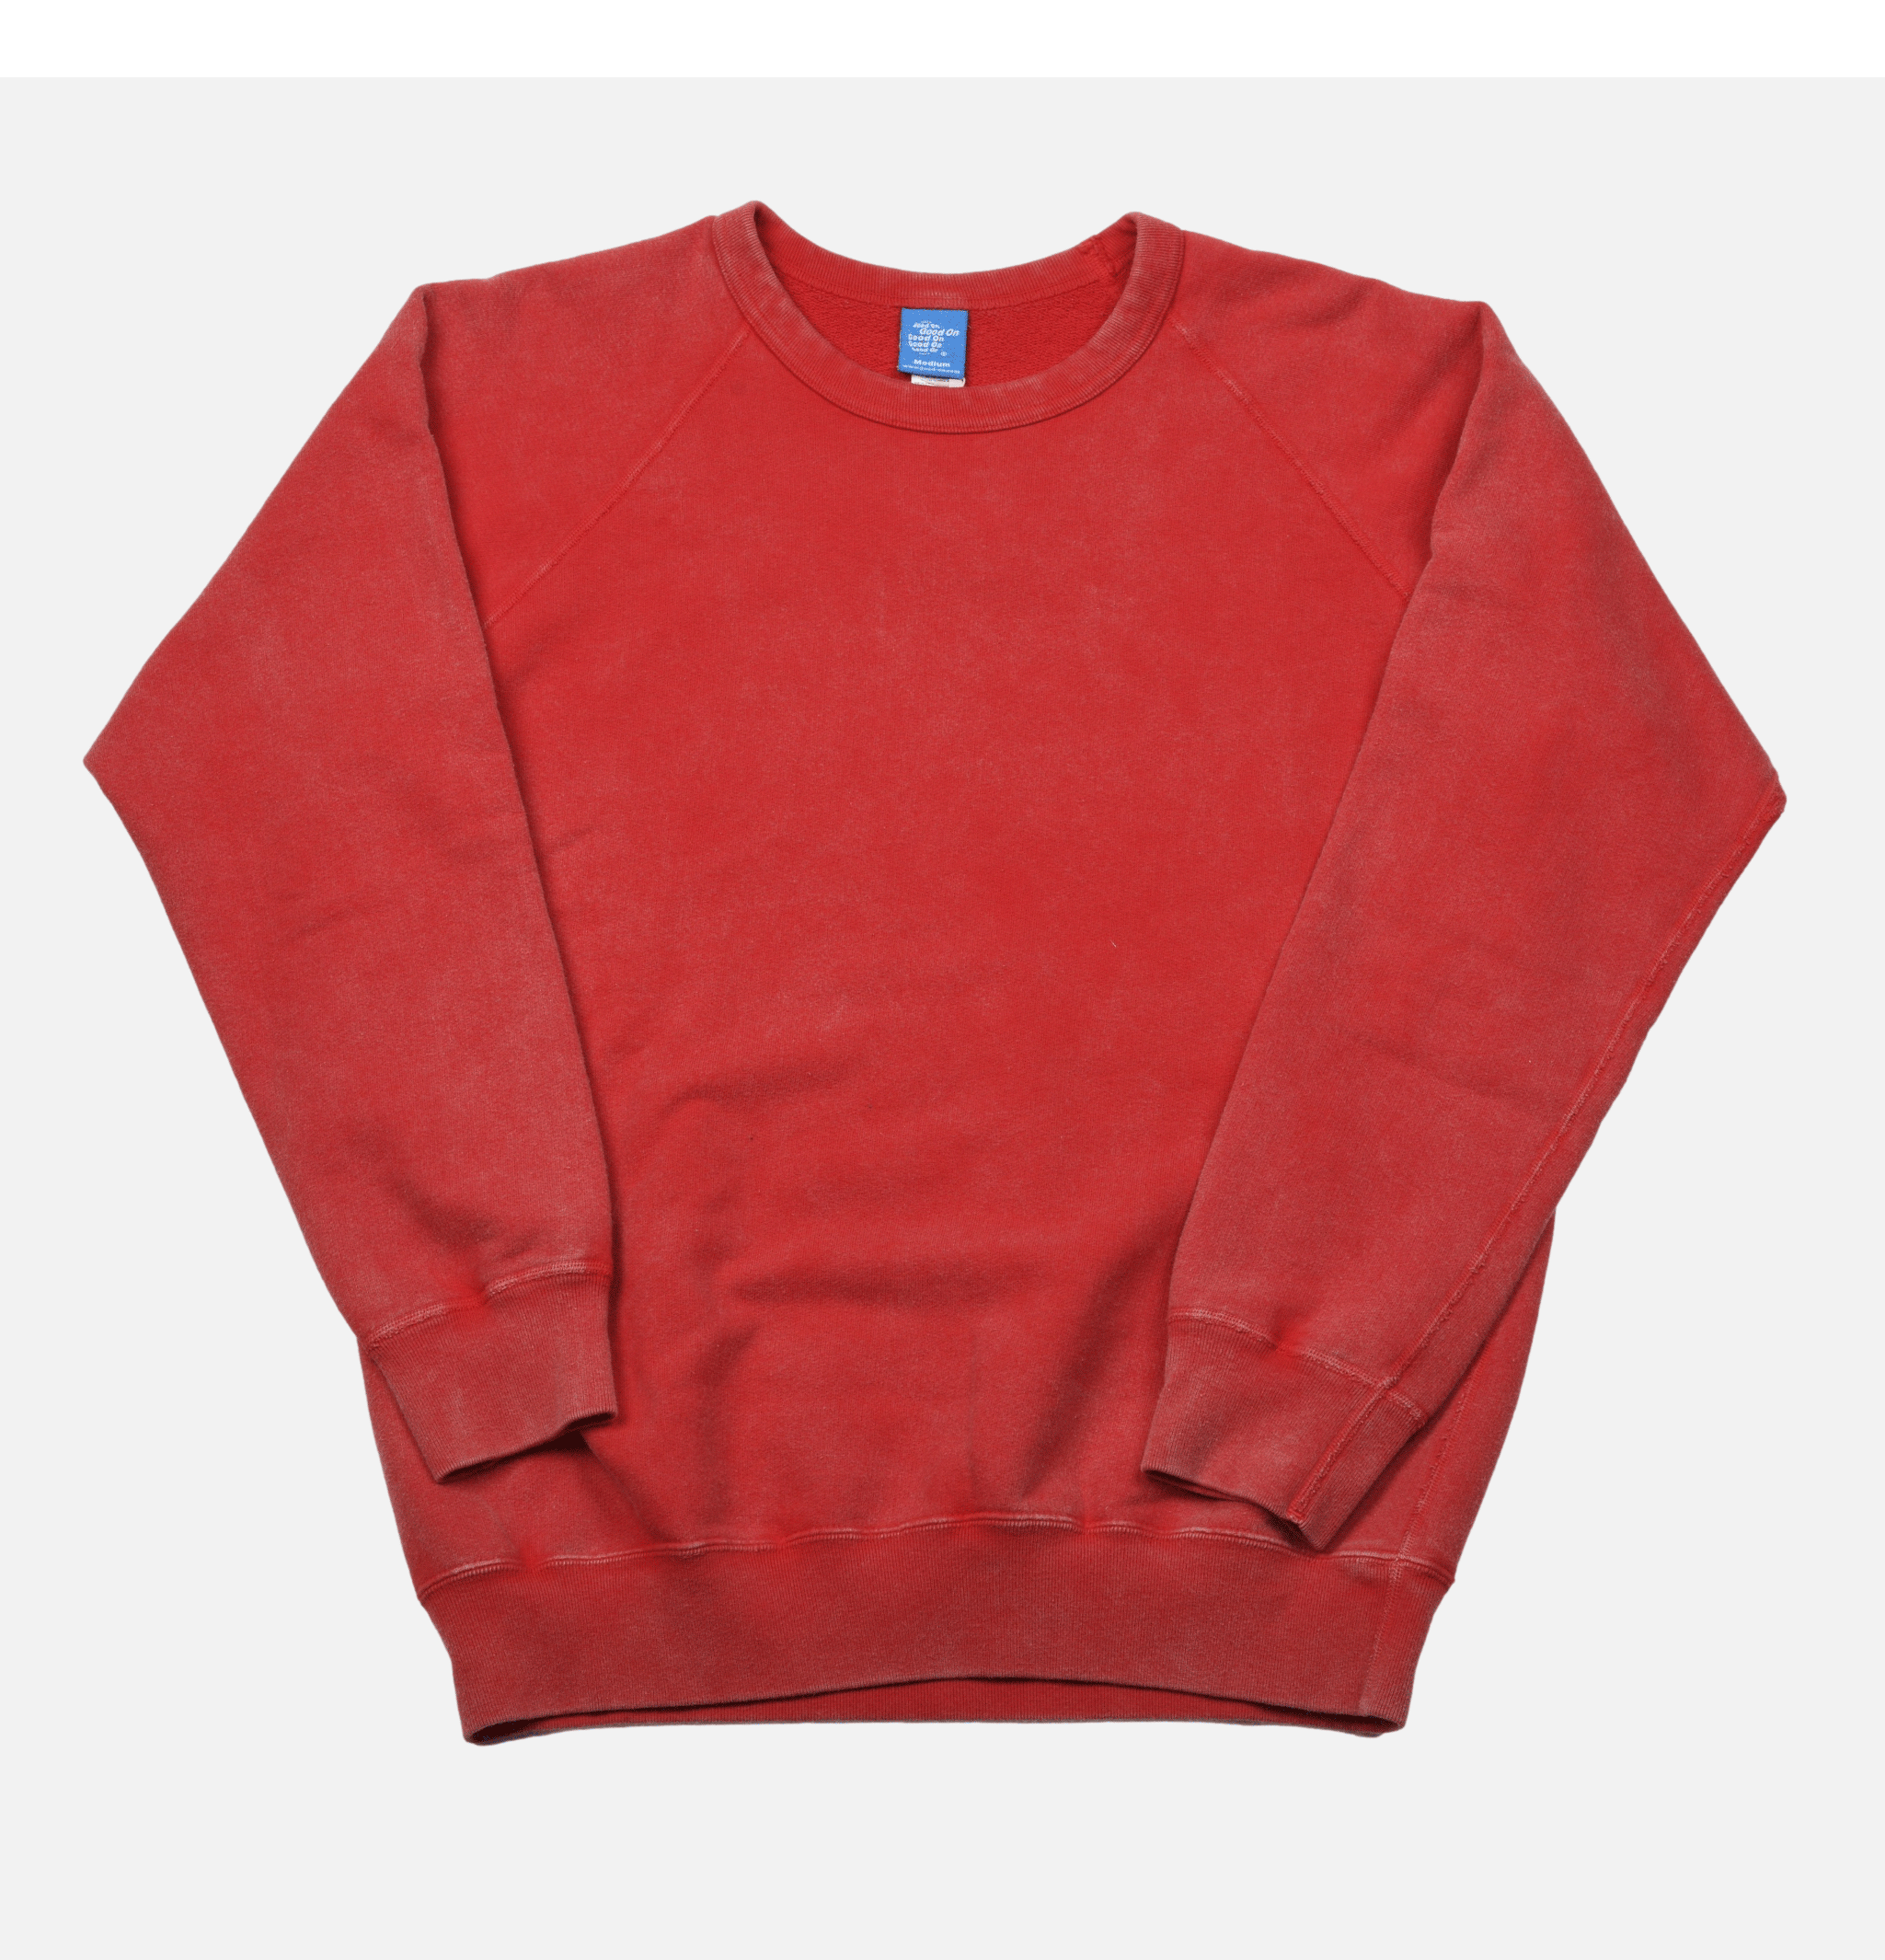 Good On Japan Vintage Dye Sweatshirt Red